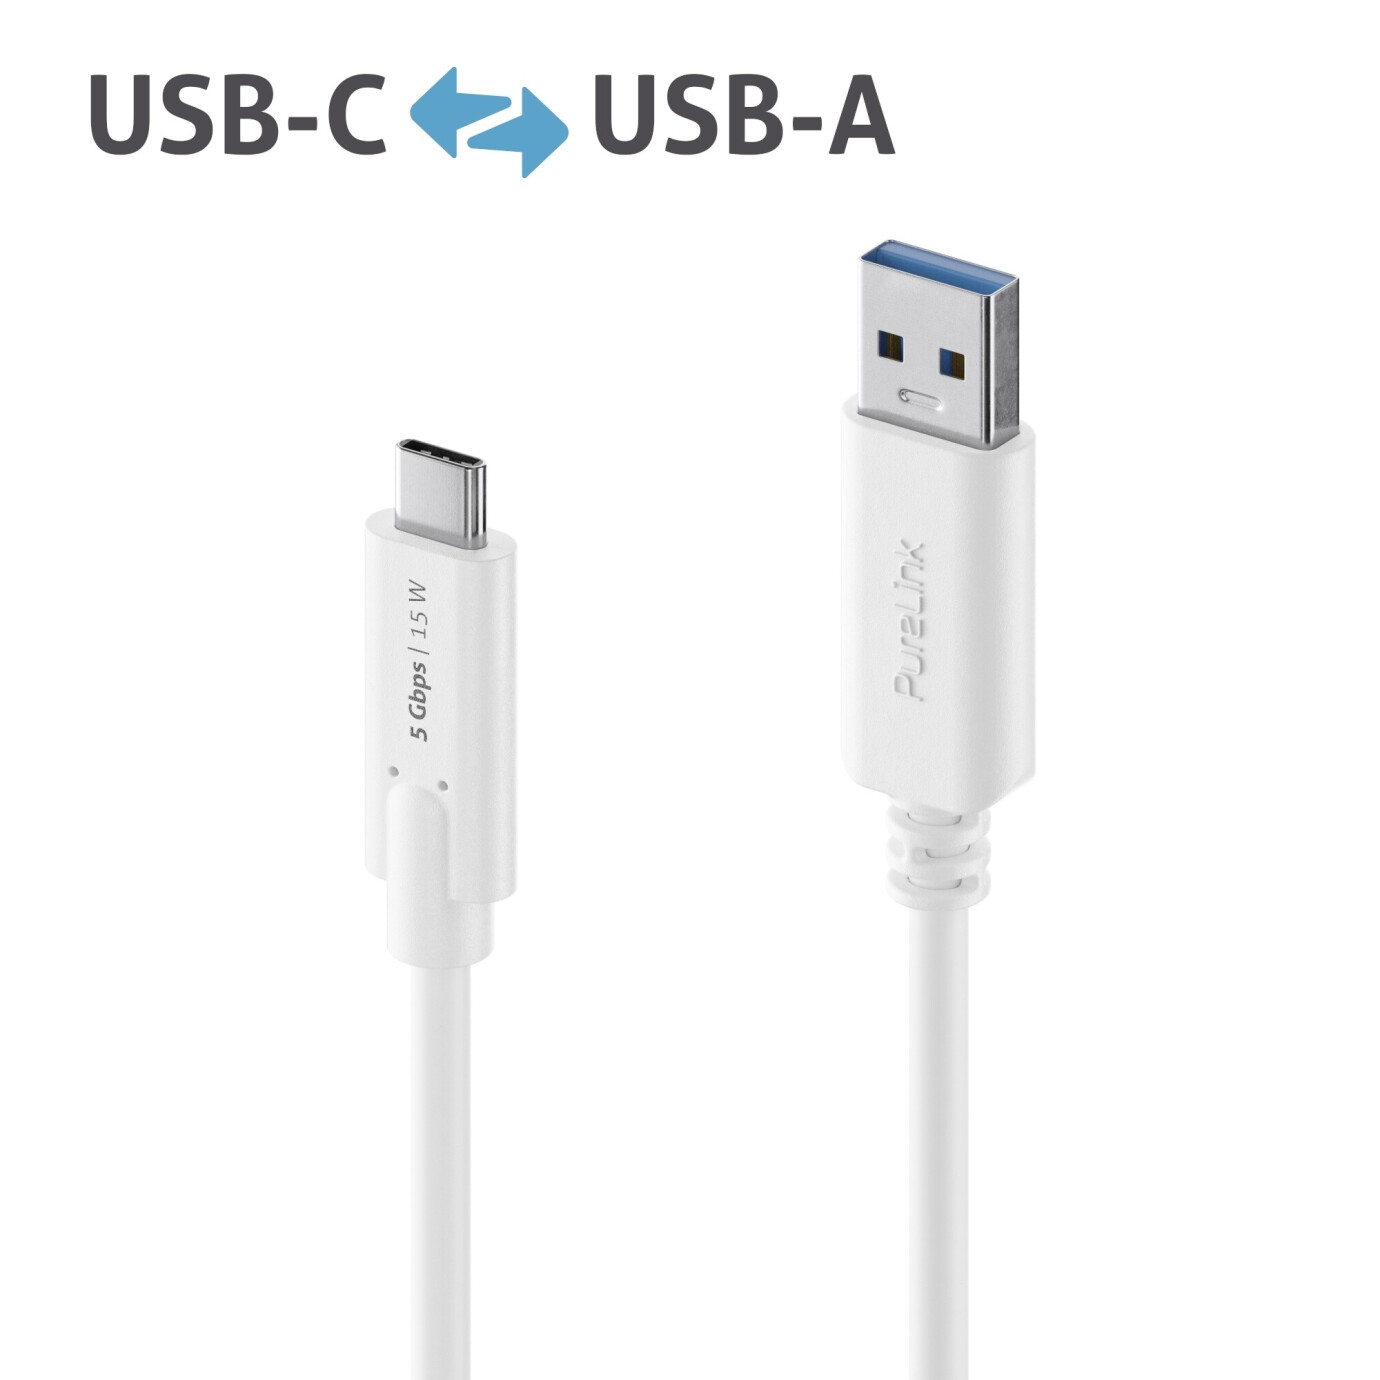 Purelink IS2600-010 USB-C auf USB-A Kabel 1m weiß